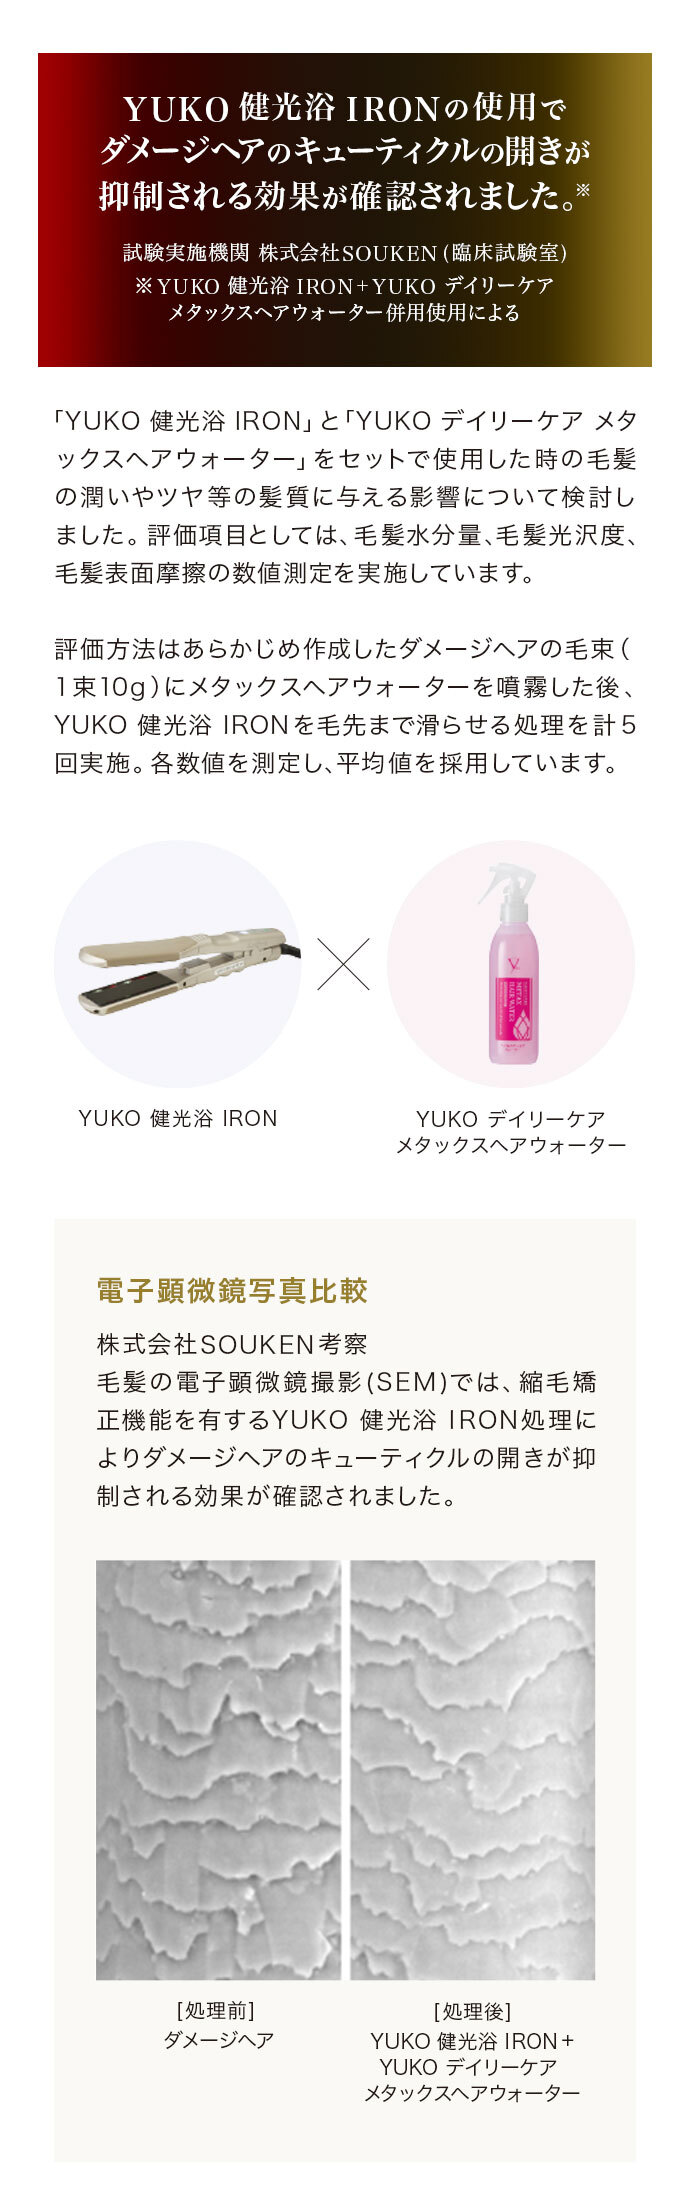 YUKO 健光浴 IRONの使用でダメージヘアのキューティクルの開きが抑制される効果が確認されました。